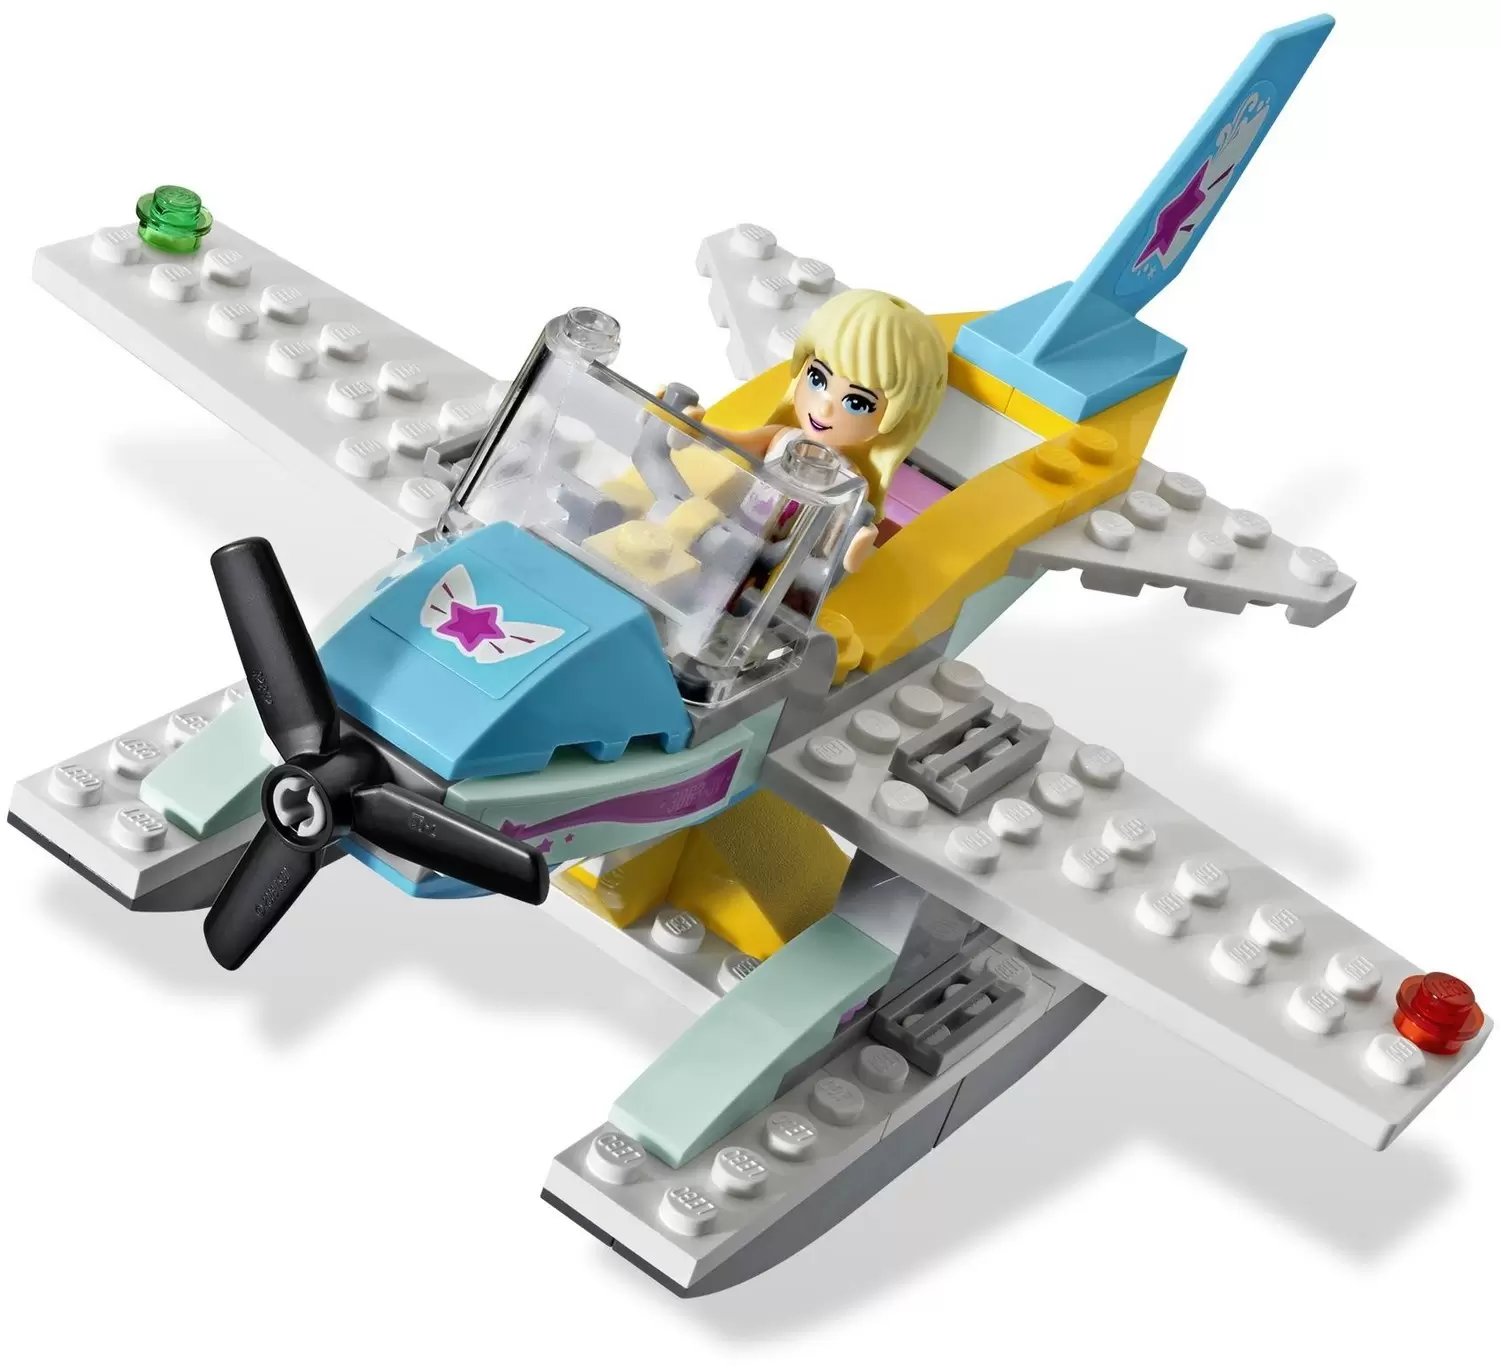 LEGO Friends - Heartlake Flying Club